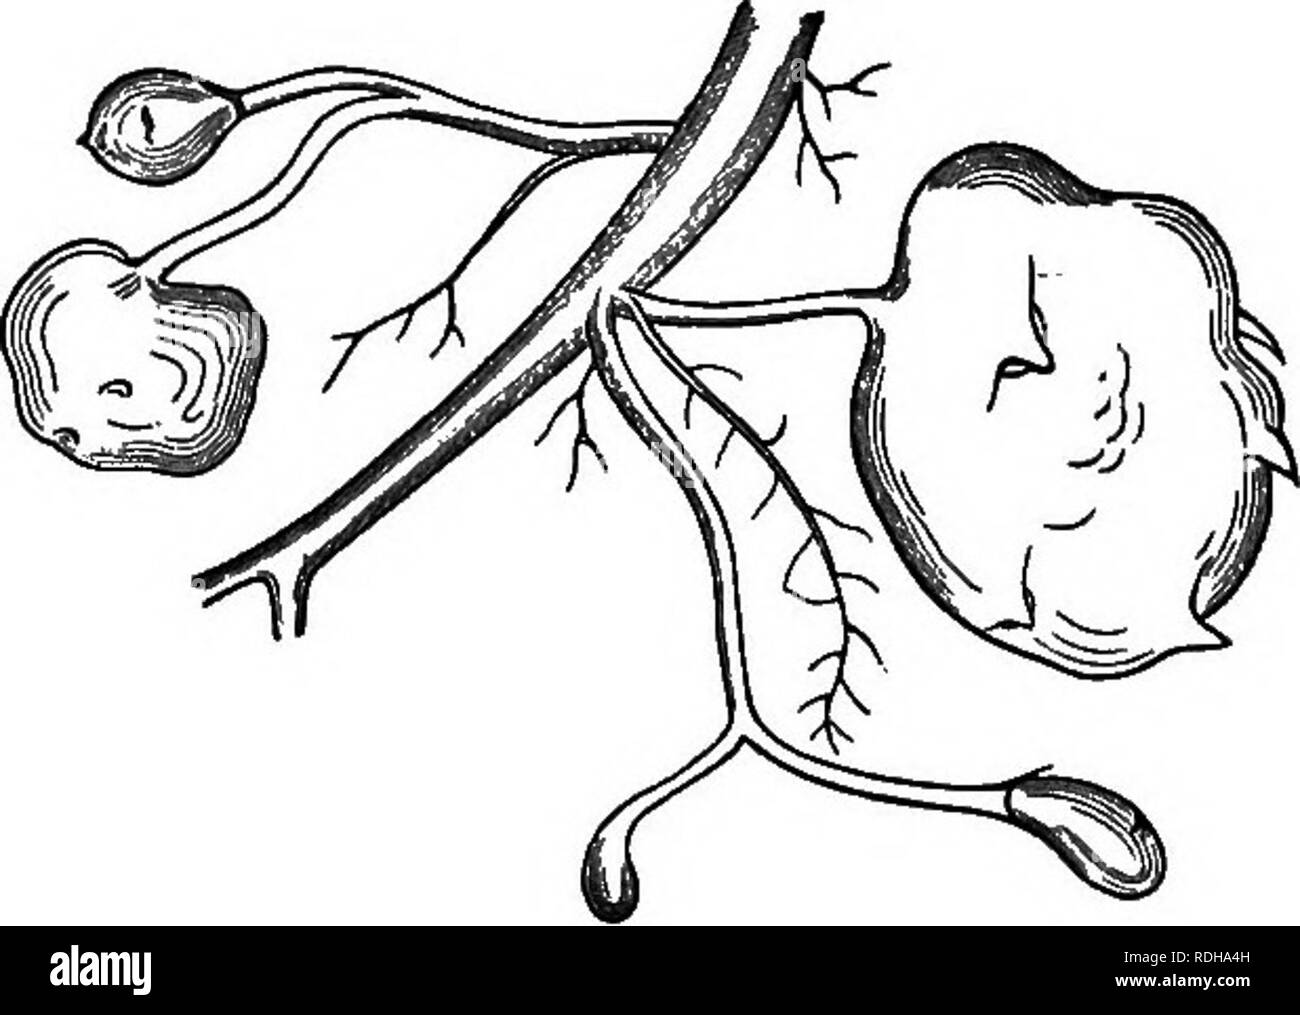 . Eine elementare Lehrbuch der Botanik, für die Verwendung von japanischen Studenten. Botanik. PlQ. 13.-- Lampe der Satoirno (Golocasia antiquorum) mit Membranöse verlässt. Schwein. 14.. Abb. 14.- Knollen der Jagataraimo (Solanum tuberosum) mit winzigen unterirdischen verlässt. taraimo (Solanum tuberosum) (Schwein. 14) und Kikuimo (Helianthus tuberosus). Diejenigen, die lange aufgerufen werden, sind. Bitte beachten Sie, dass diese Bilder sind von der gescannten Seite Bilder, die digital für die Lesbarkeit verbessert haben mögen - Färbung und Aussehen dieser Abbildungen können nicht perfekt dem Original ähneln. extrahiert. Saida, Ko?Taro?, Stockfoto